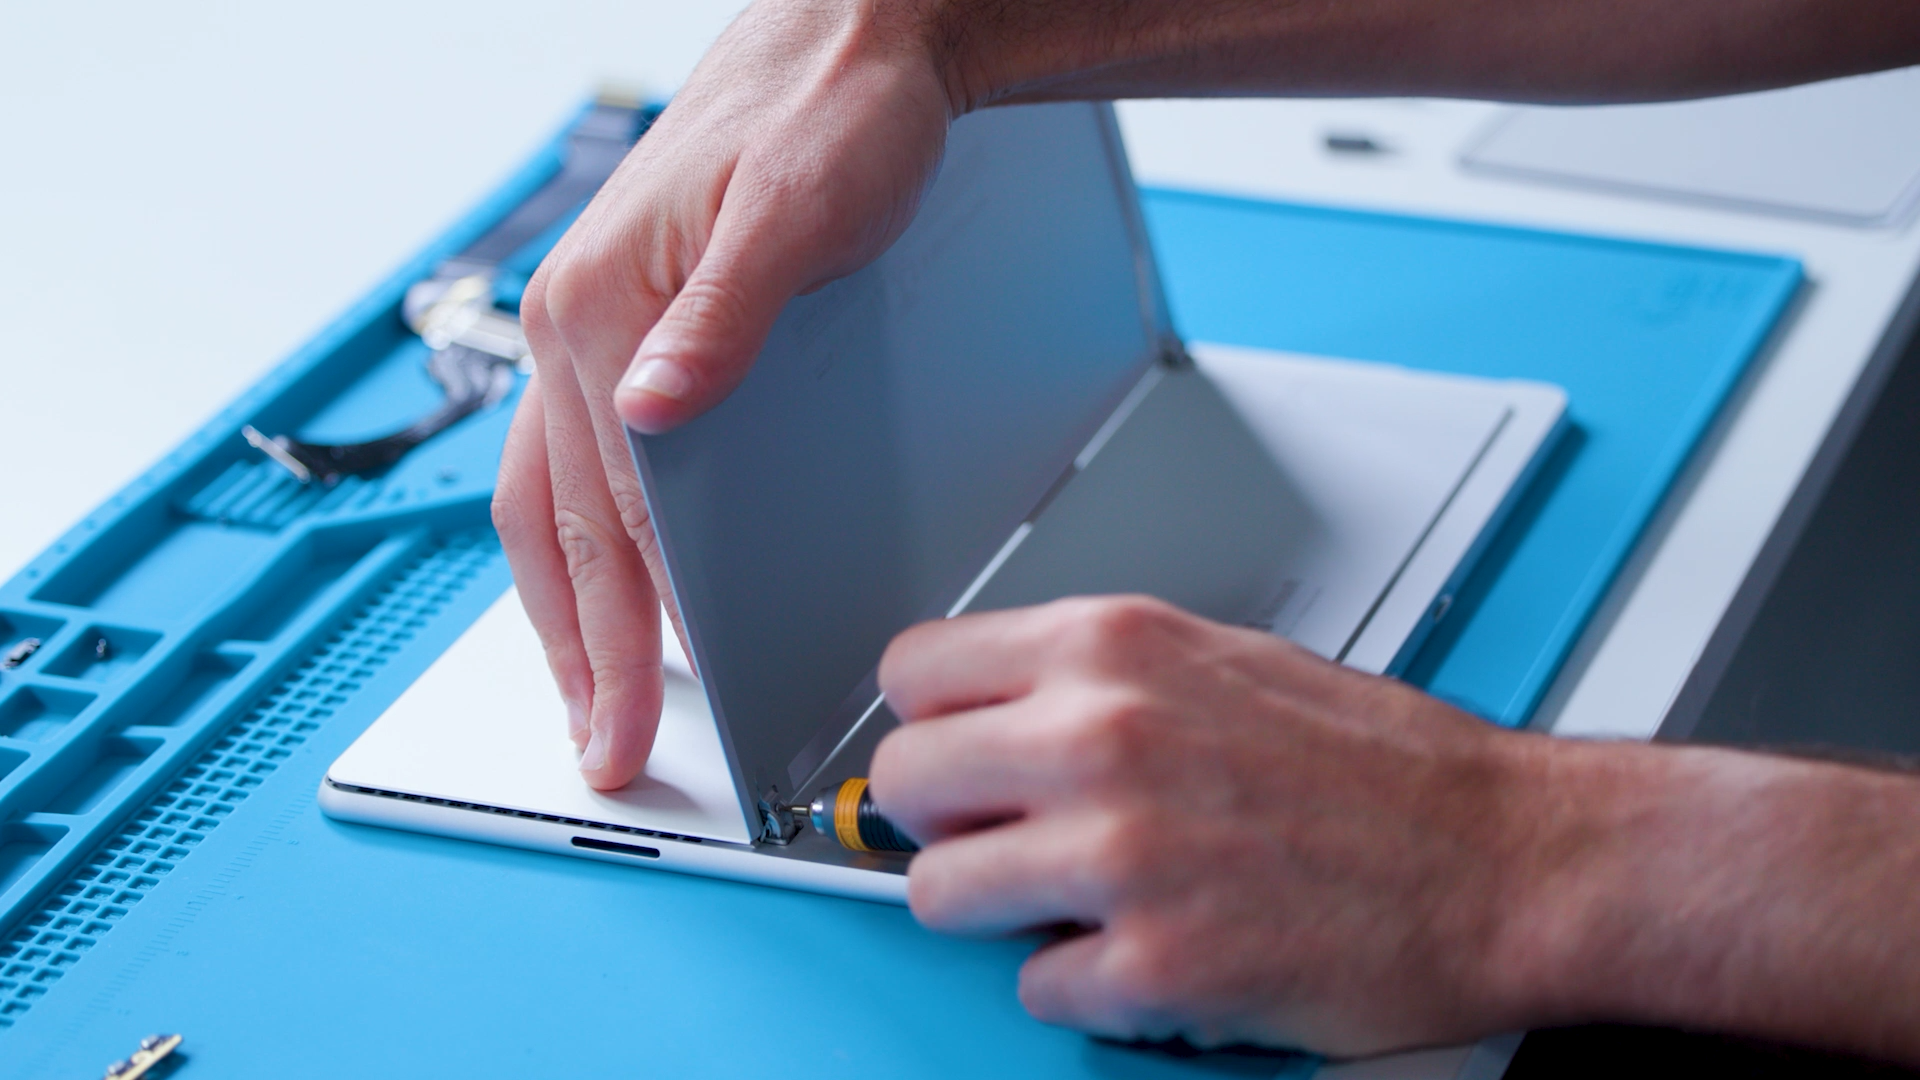 Comprar Surface Go 4 para empresas